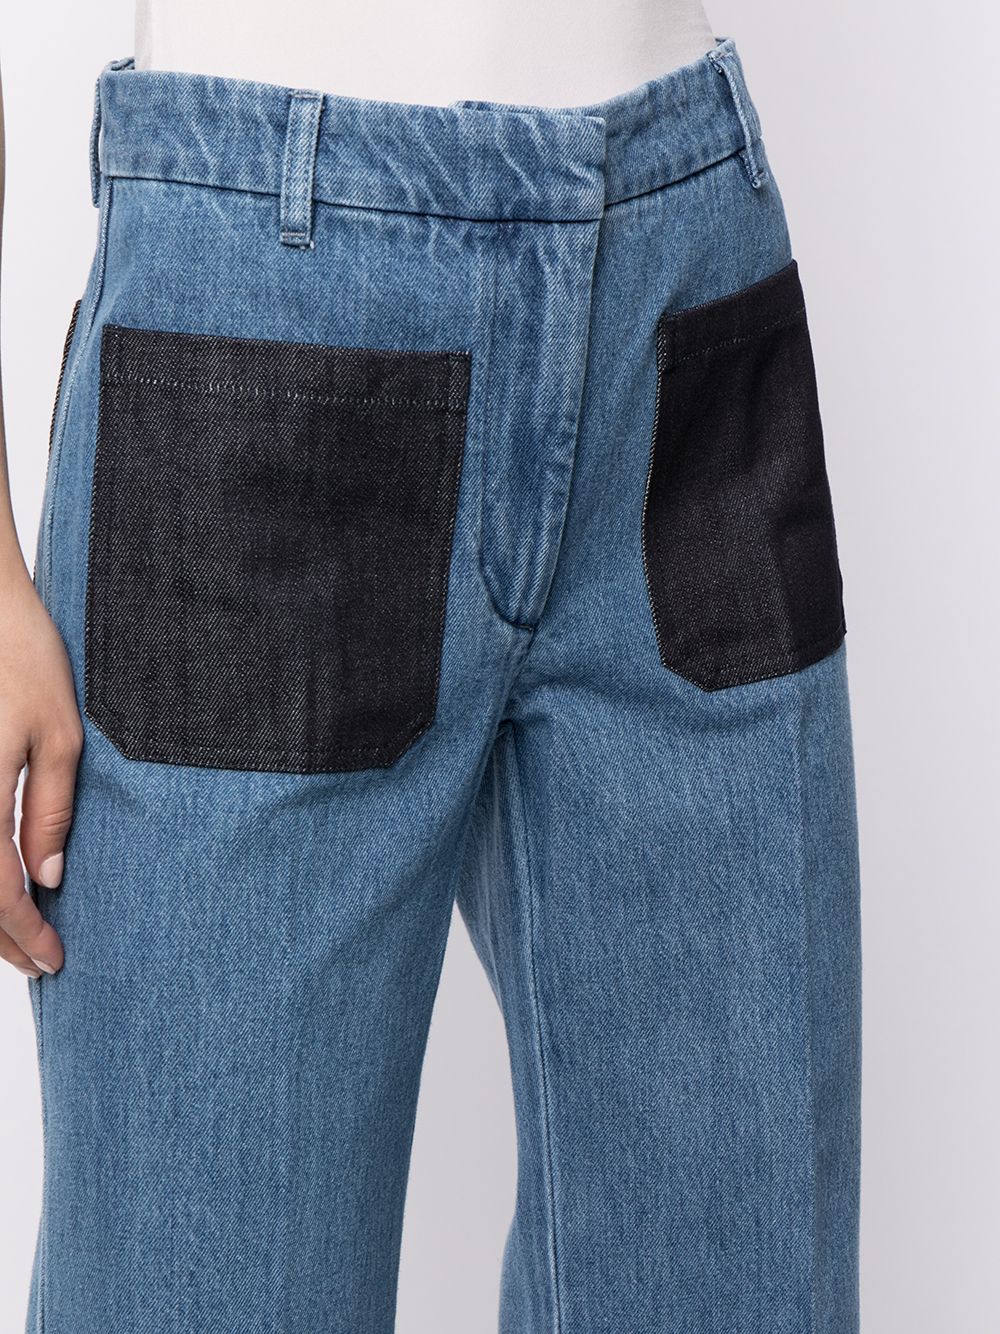 фото Victoria beckham джинсы с накладными карманами